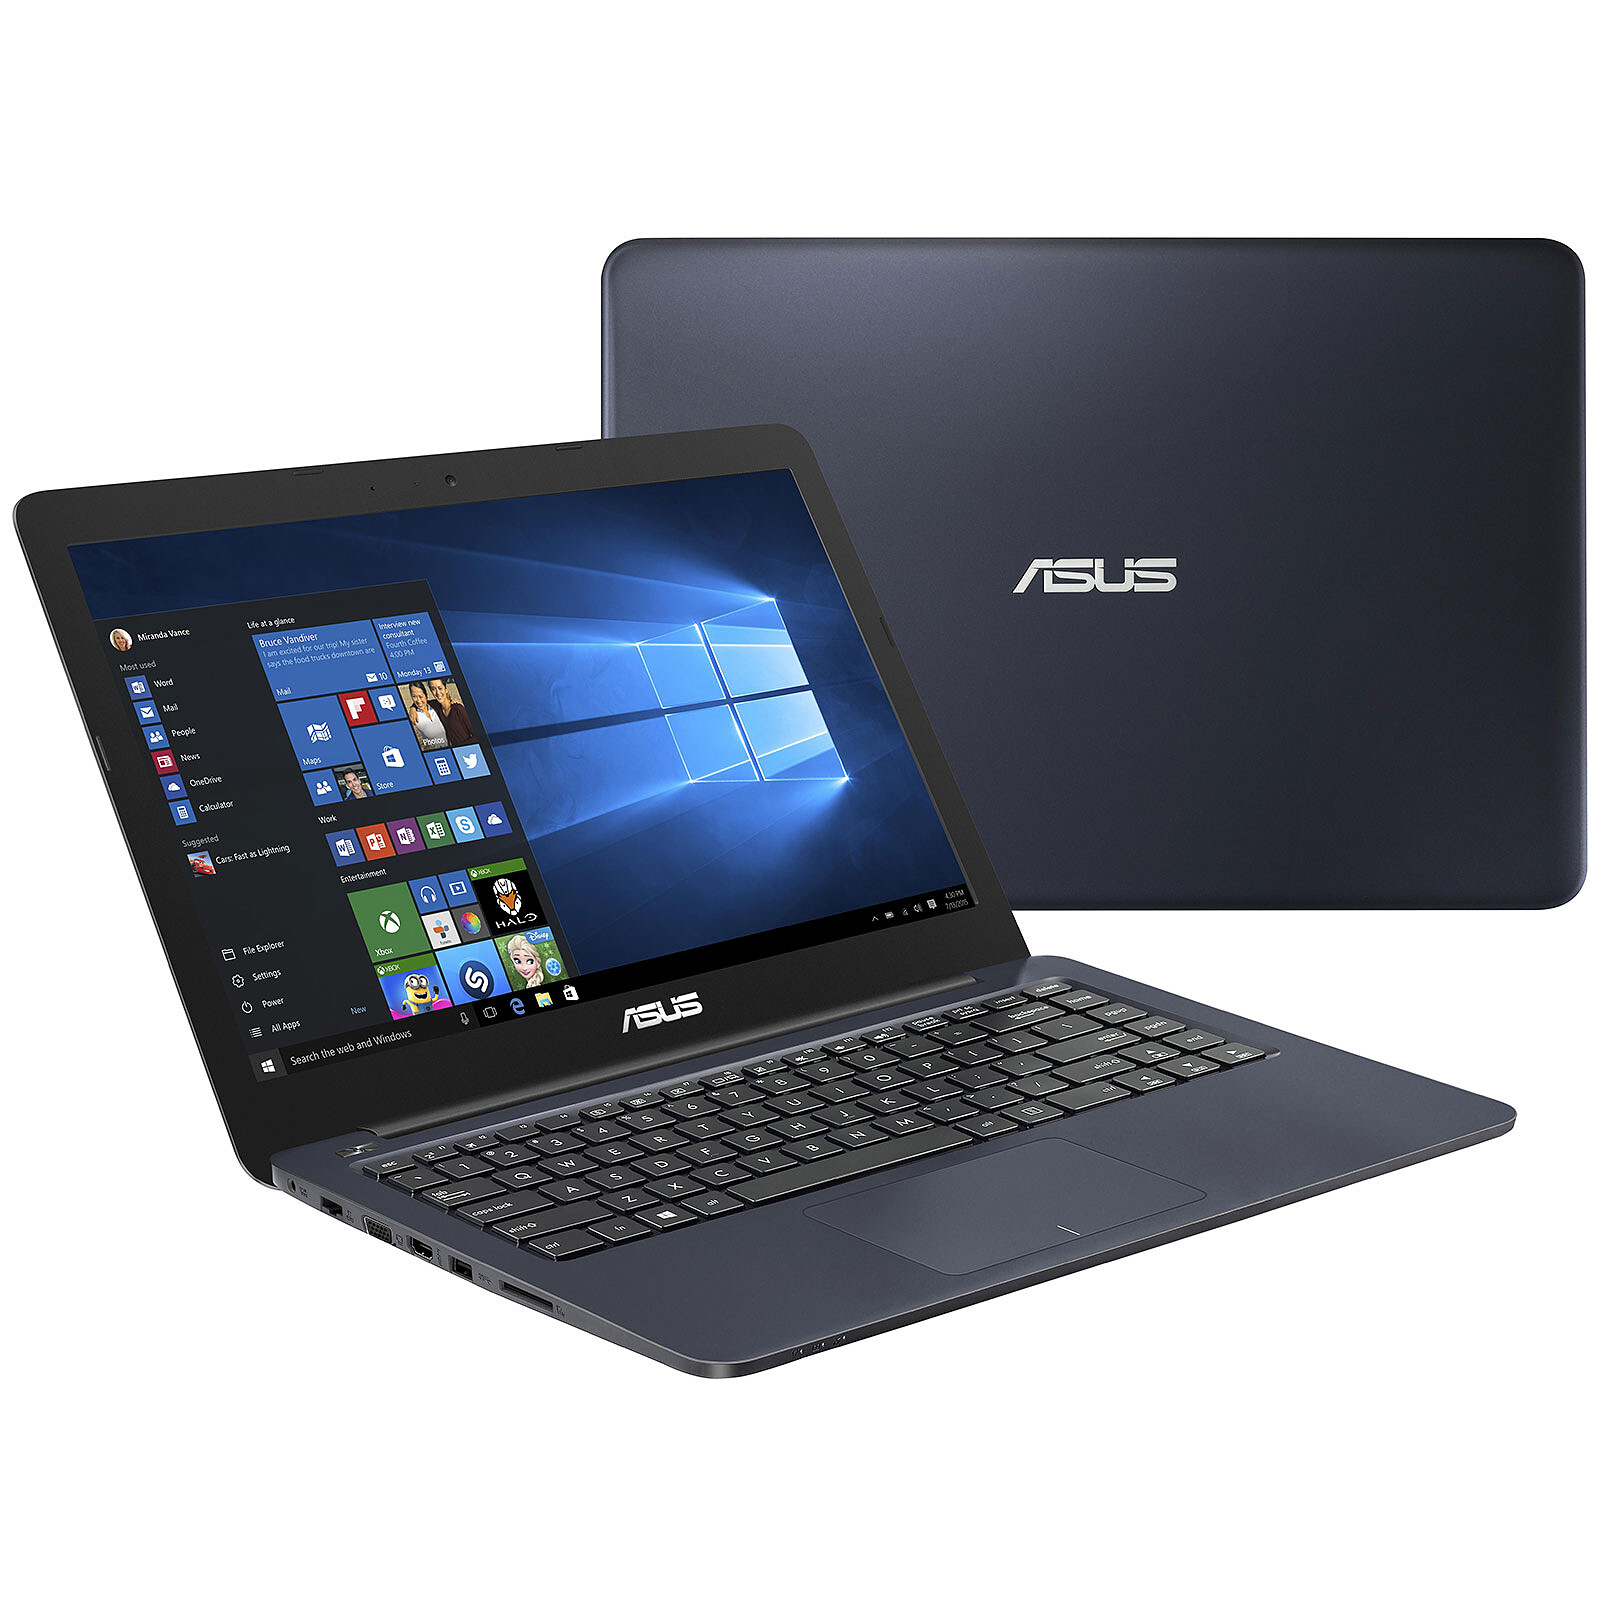 ASUS EeeBook E402SA-WX027T Bleu - PC portable - Garantie 3 ans LDLC